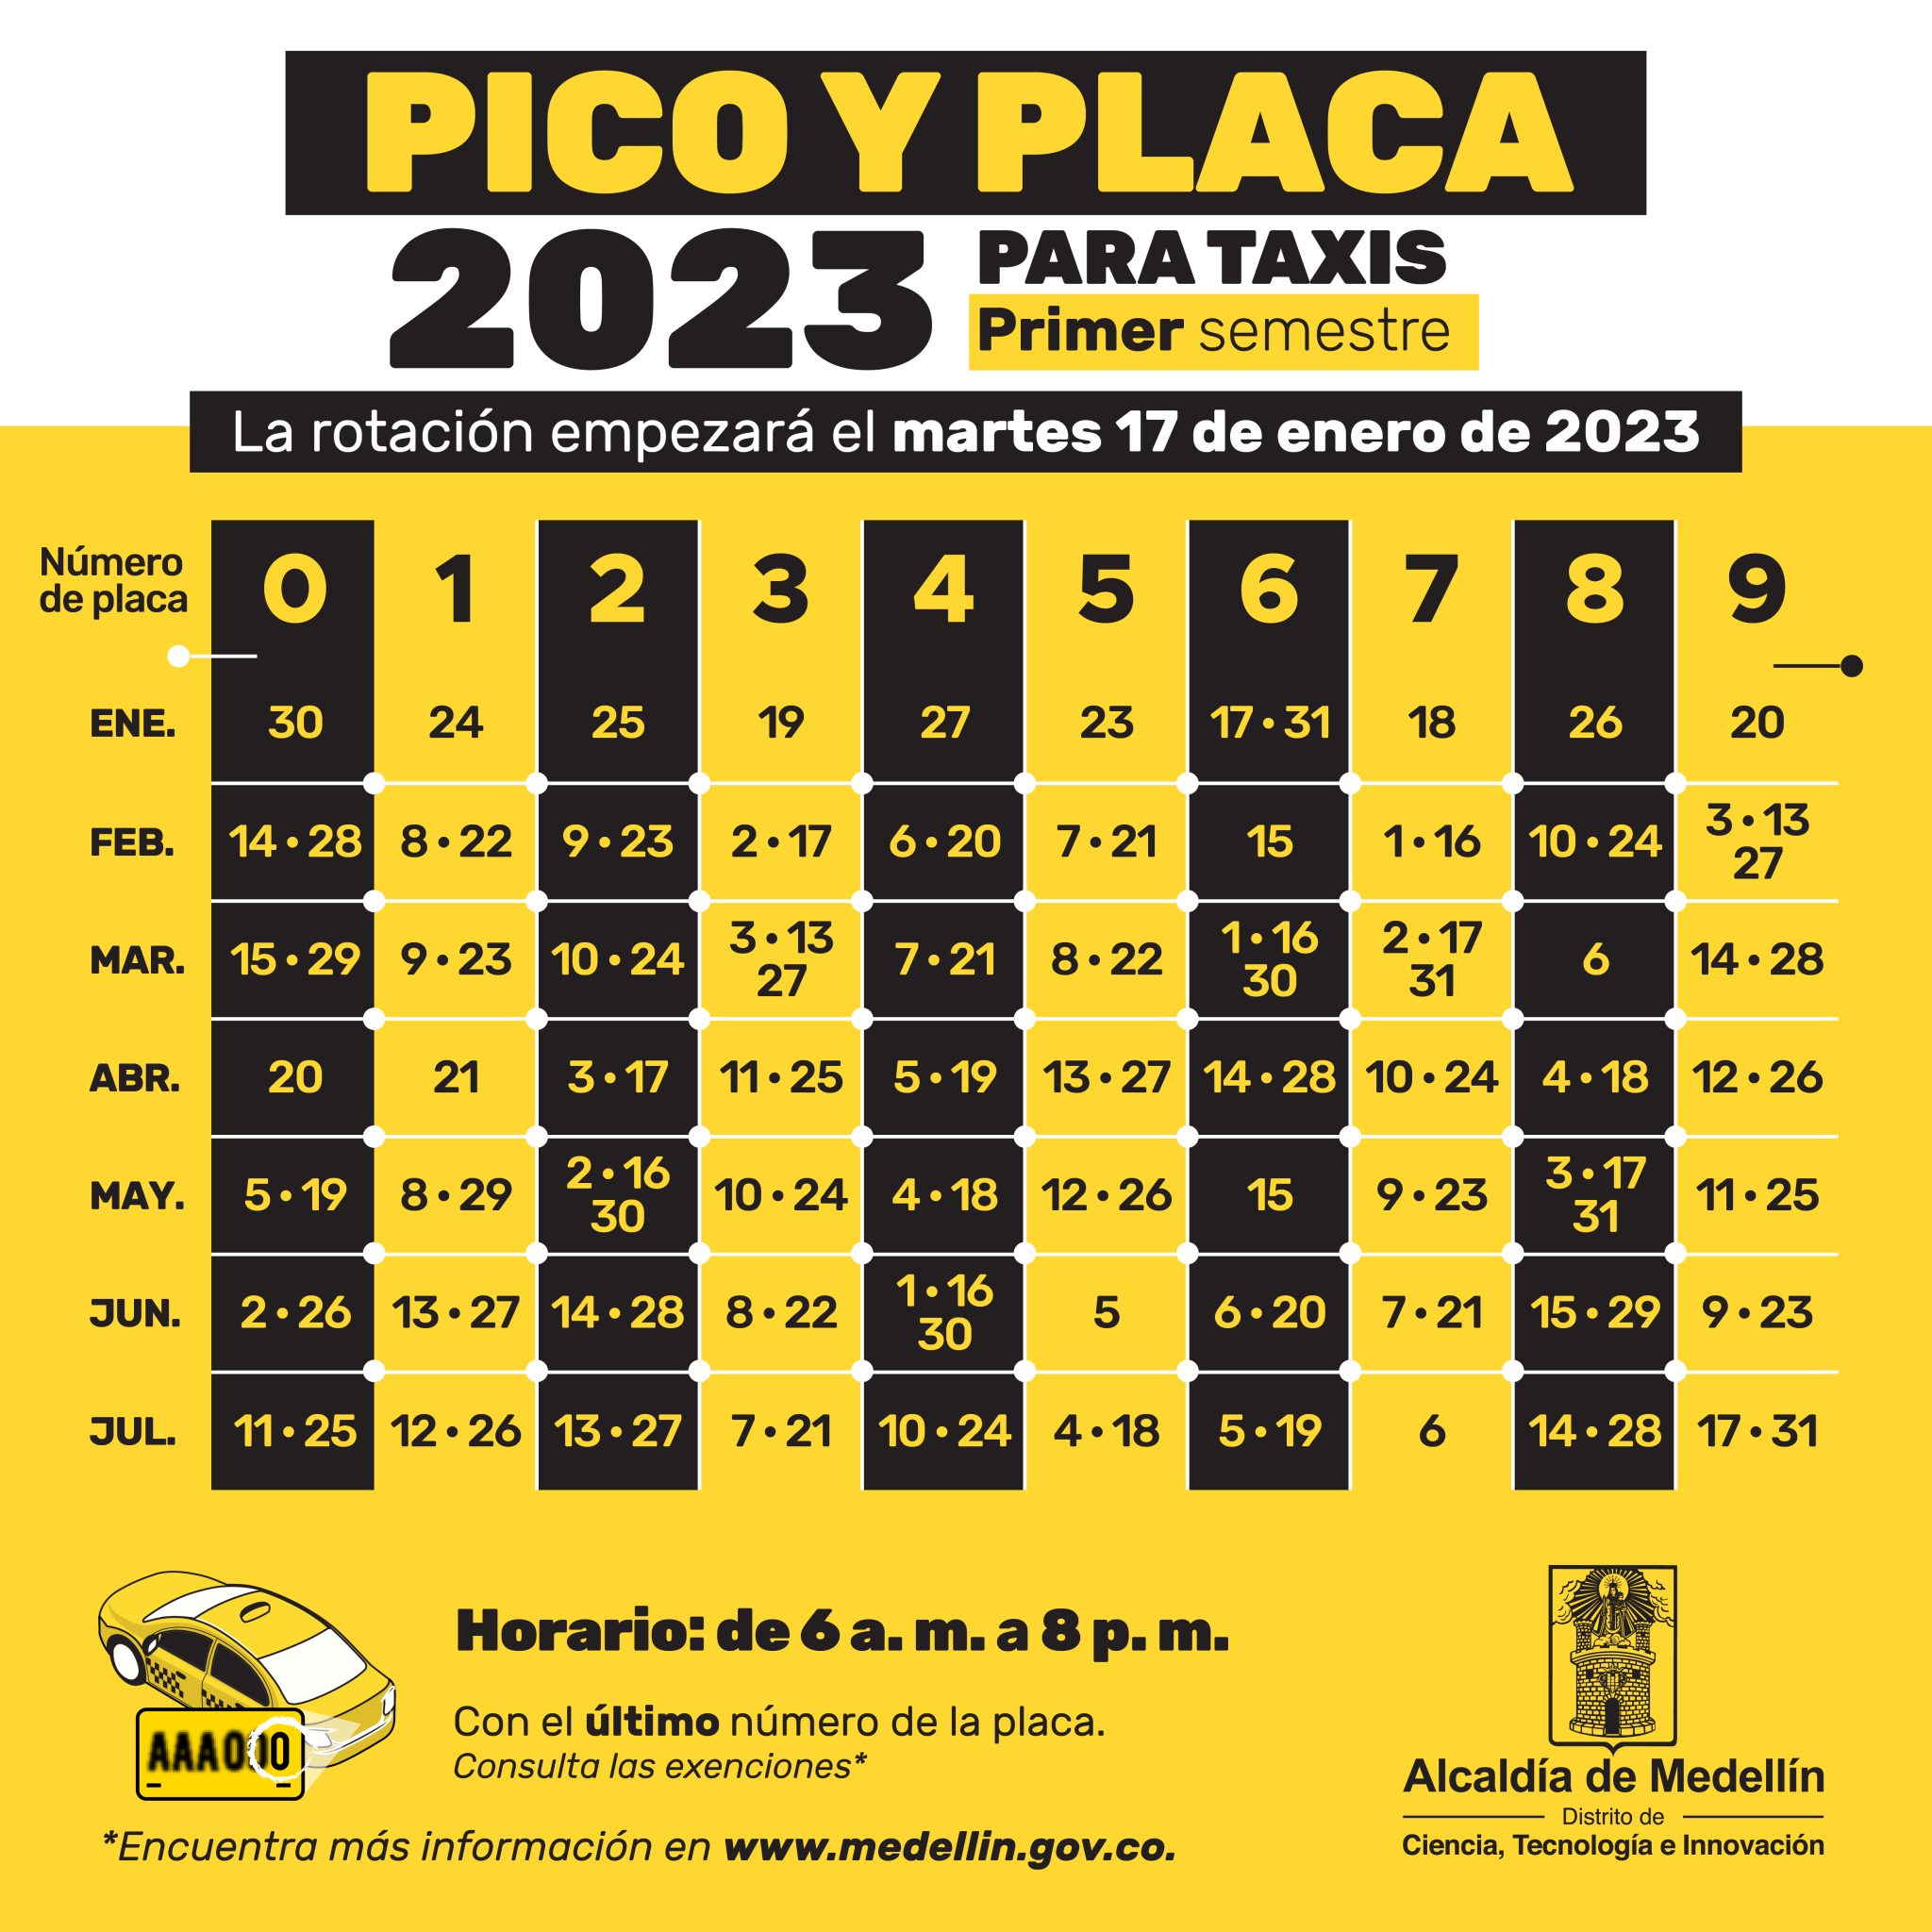 Pico y placa miércoles, 22 de febrero de 2023, en Medellín y el Valle